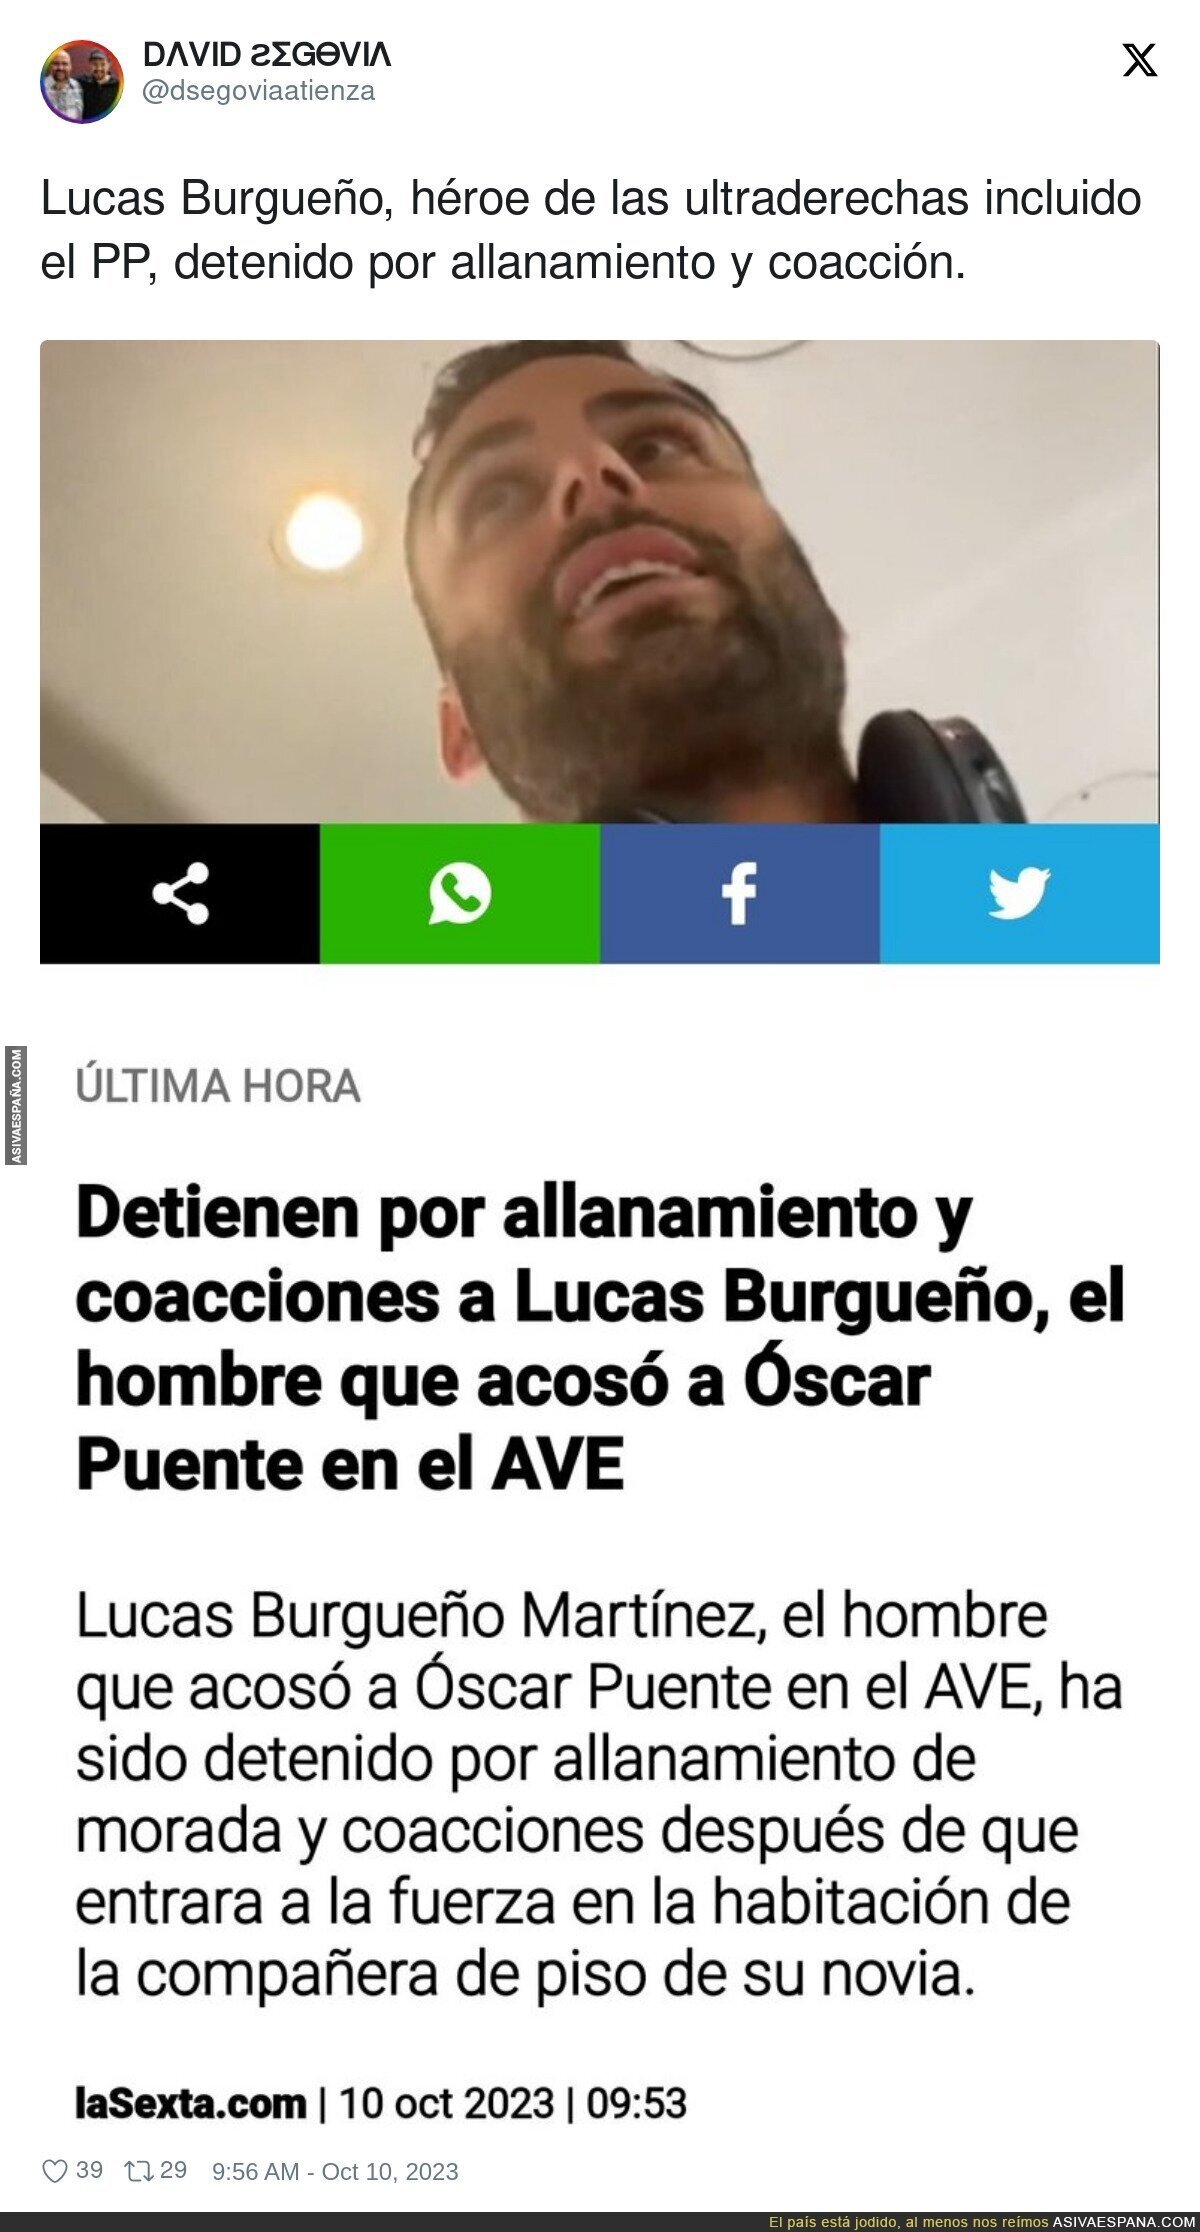 Lucas Burgueño, héroe de las ultraderechas incluido el PP